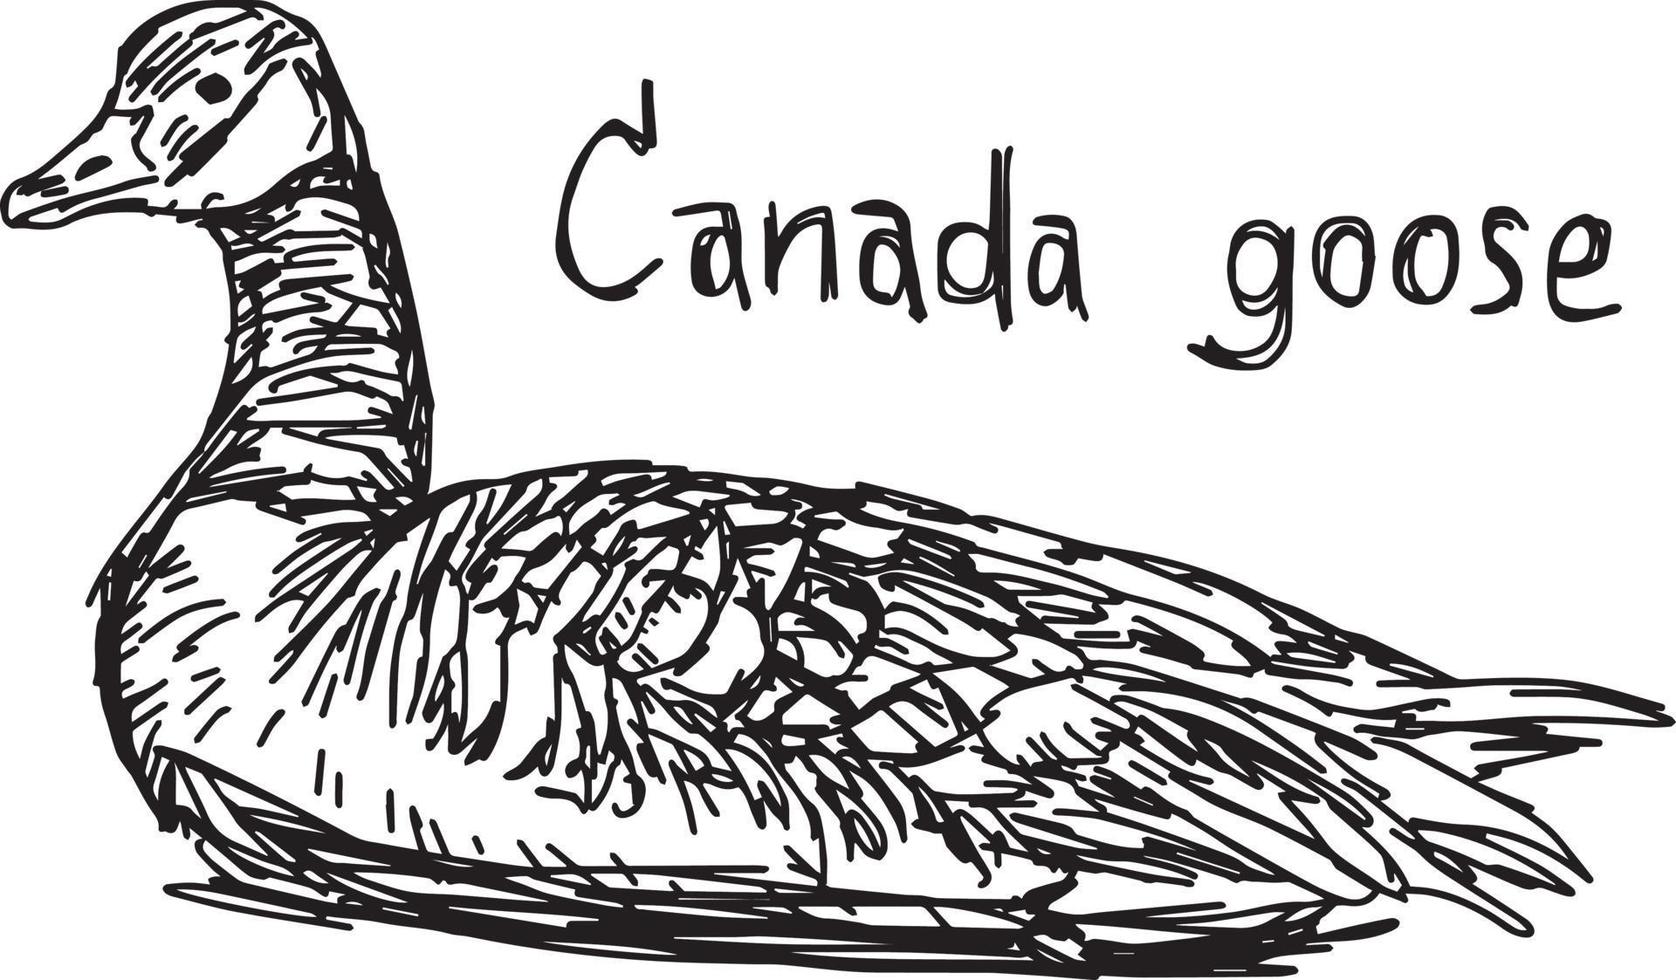 canada goose - vektor illustration skiss handritad